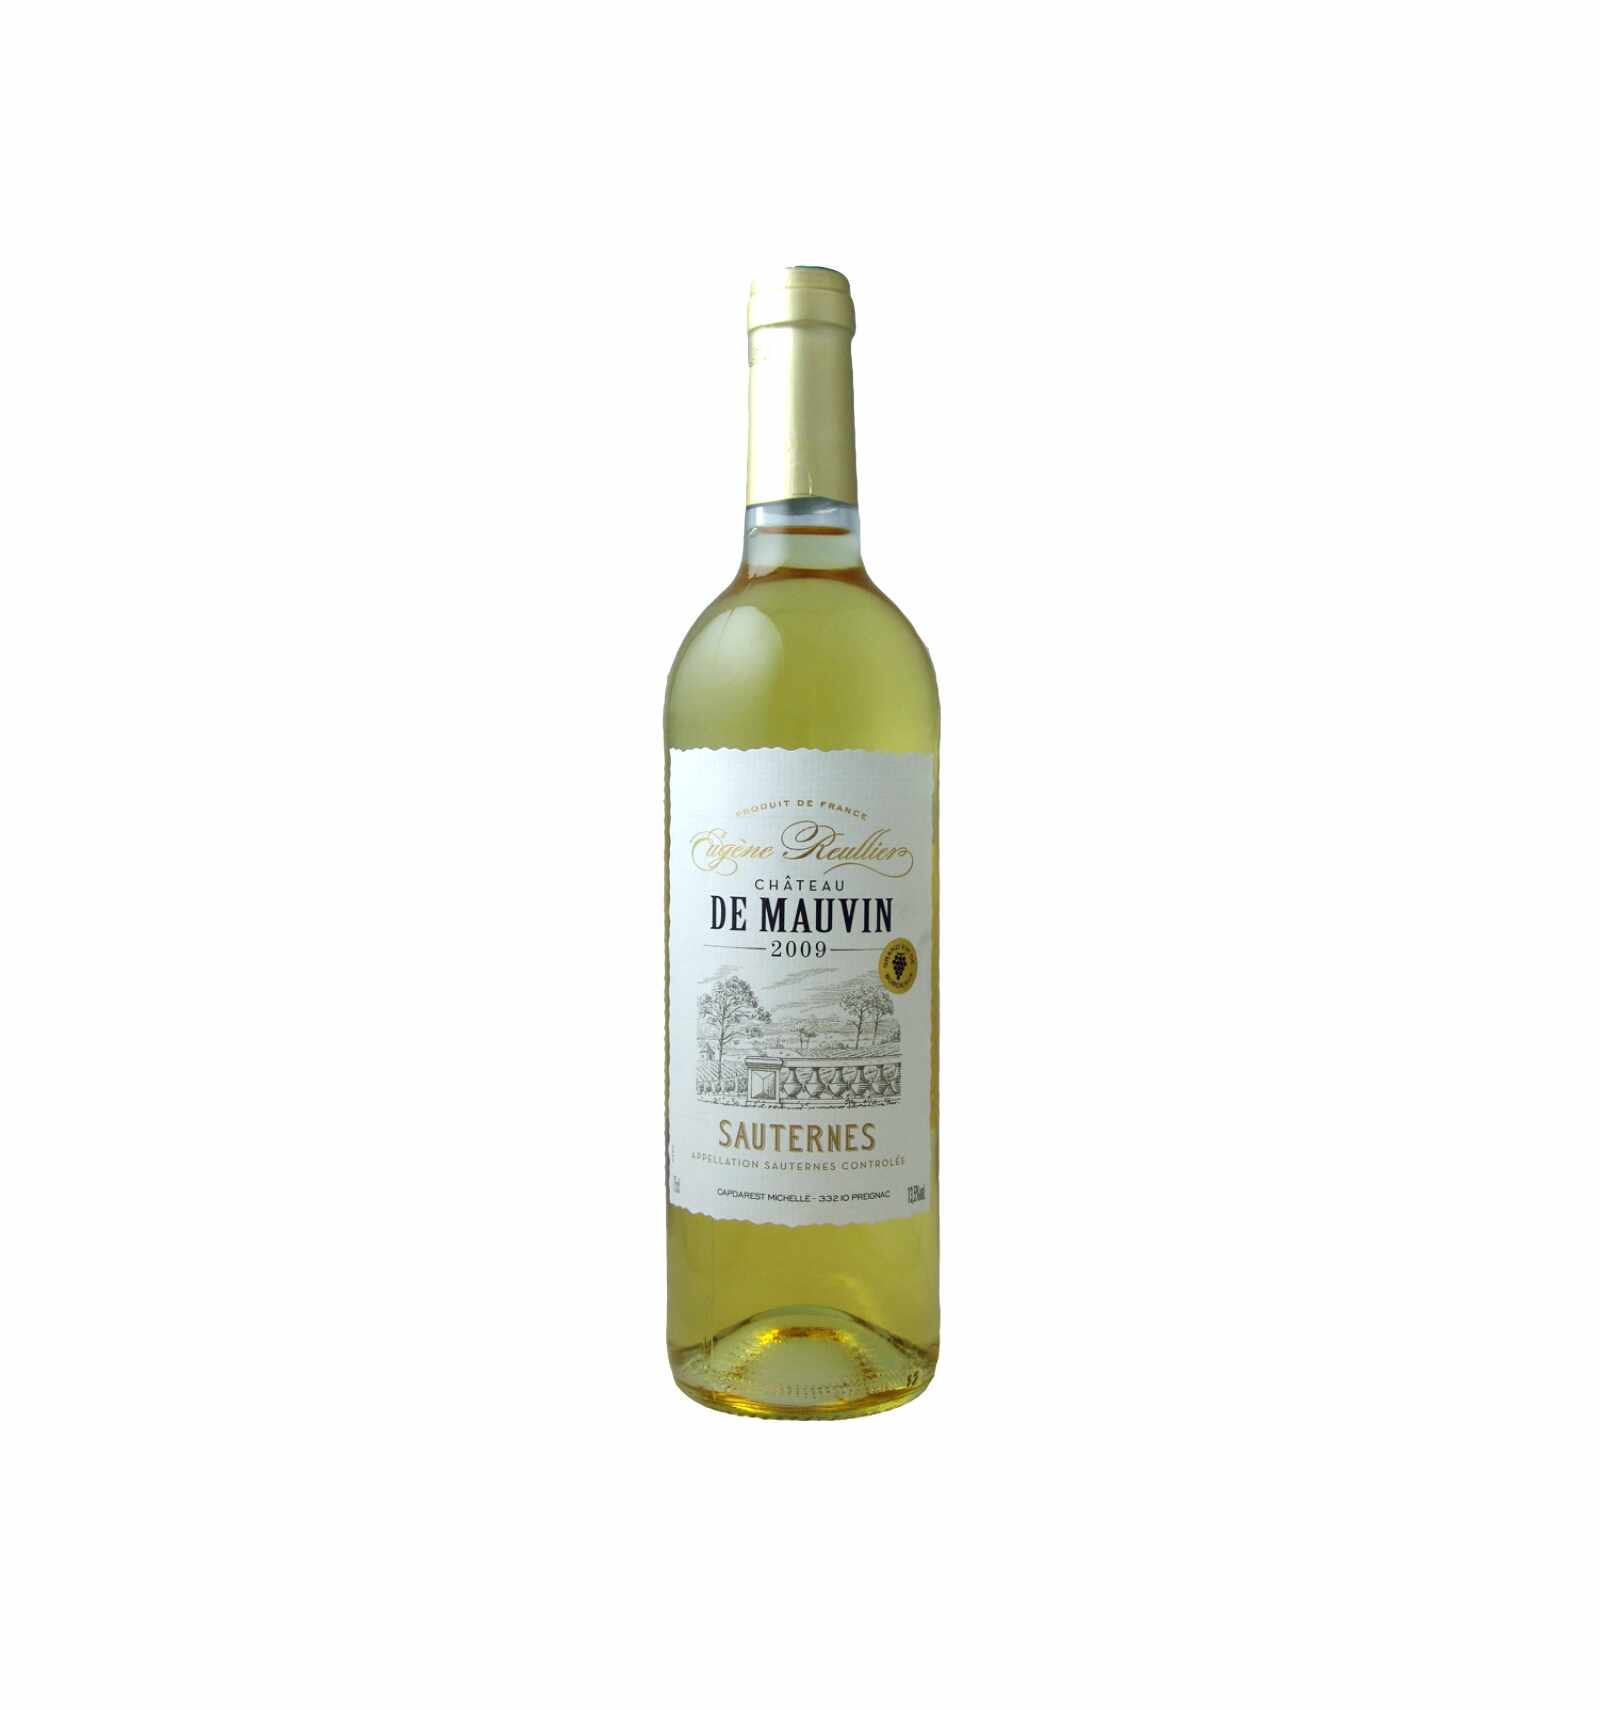 Vin alb dulce, Eugene Reulier Chateau de Mauvin Sauternes, 0.75L, Franta